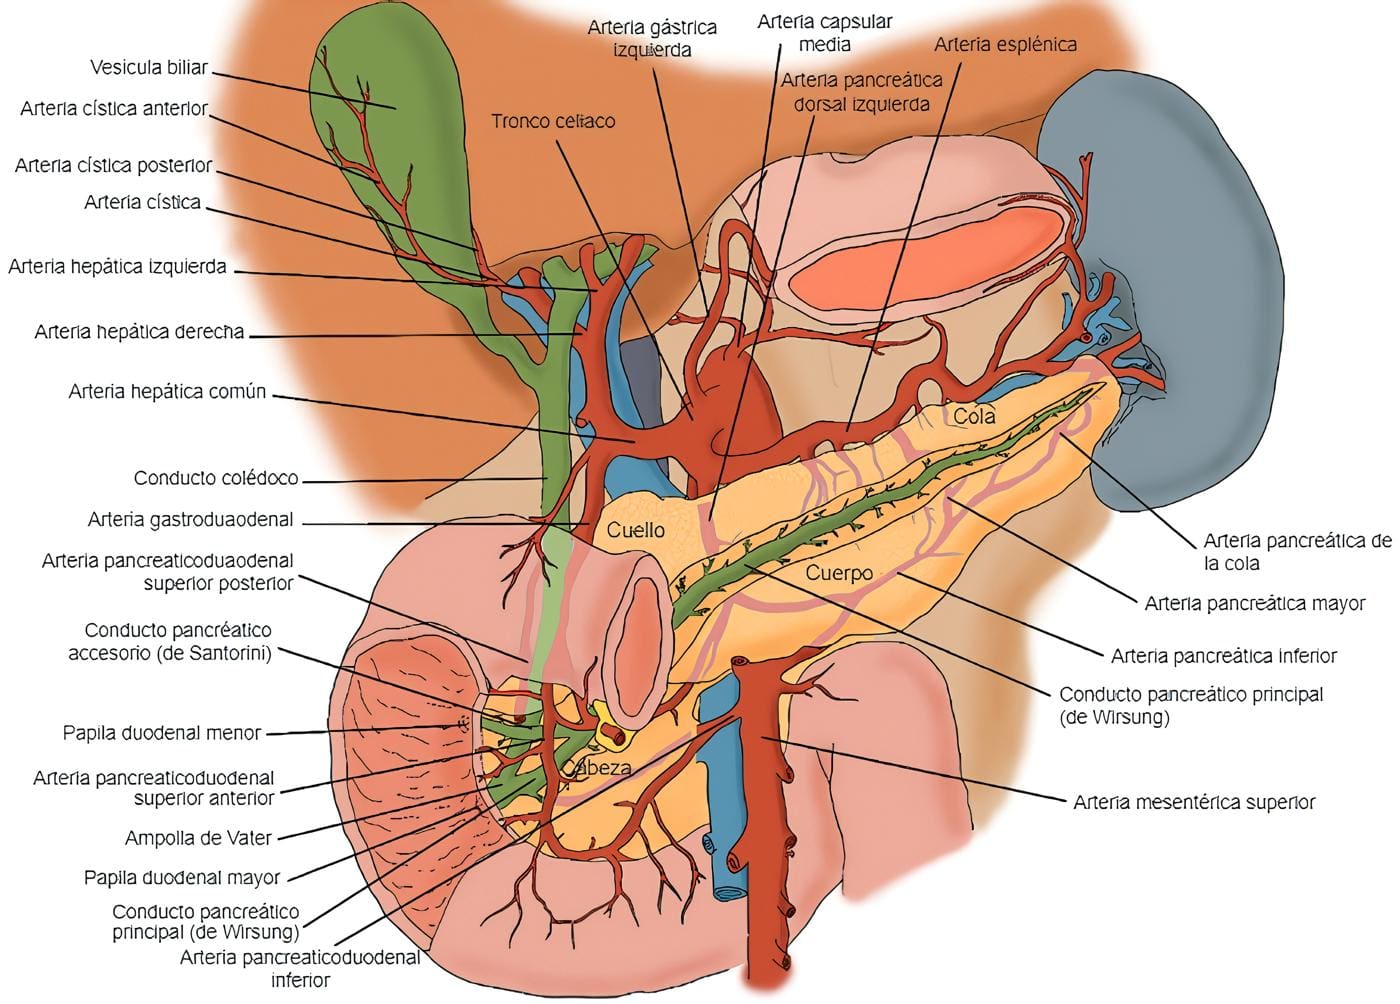 El páncreas y sus principales relaciones anatómicas